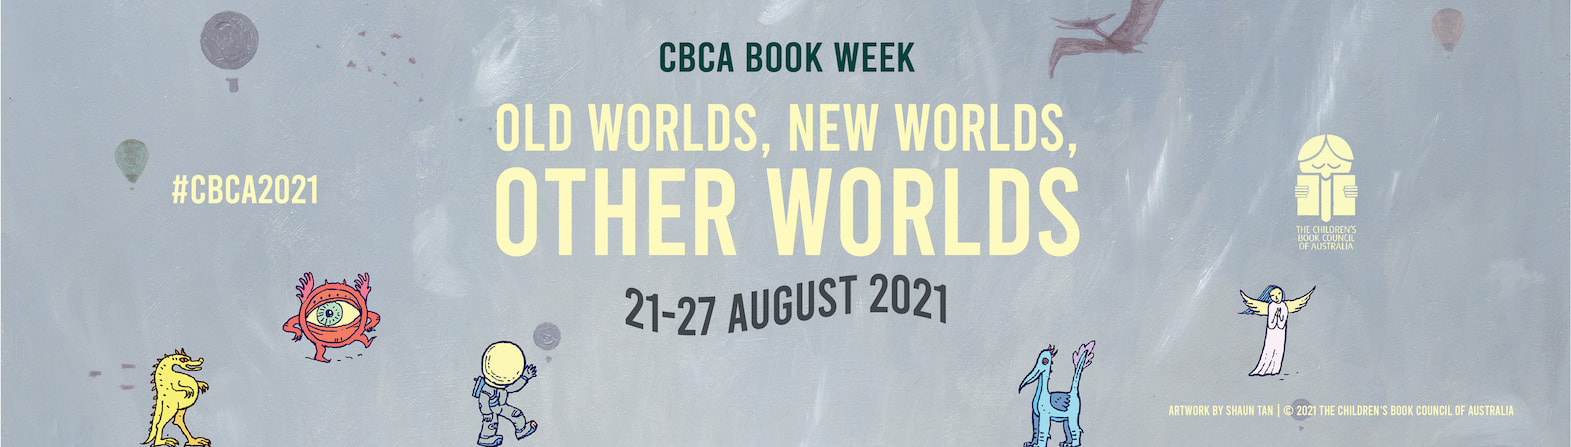 CBCA Book Week 2021